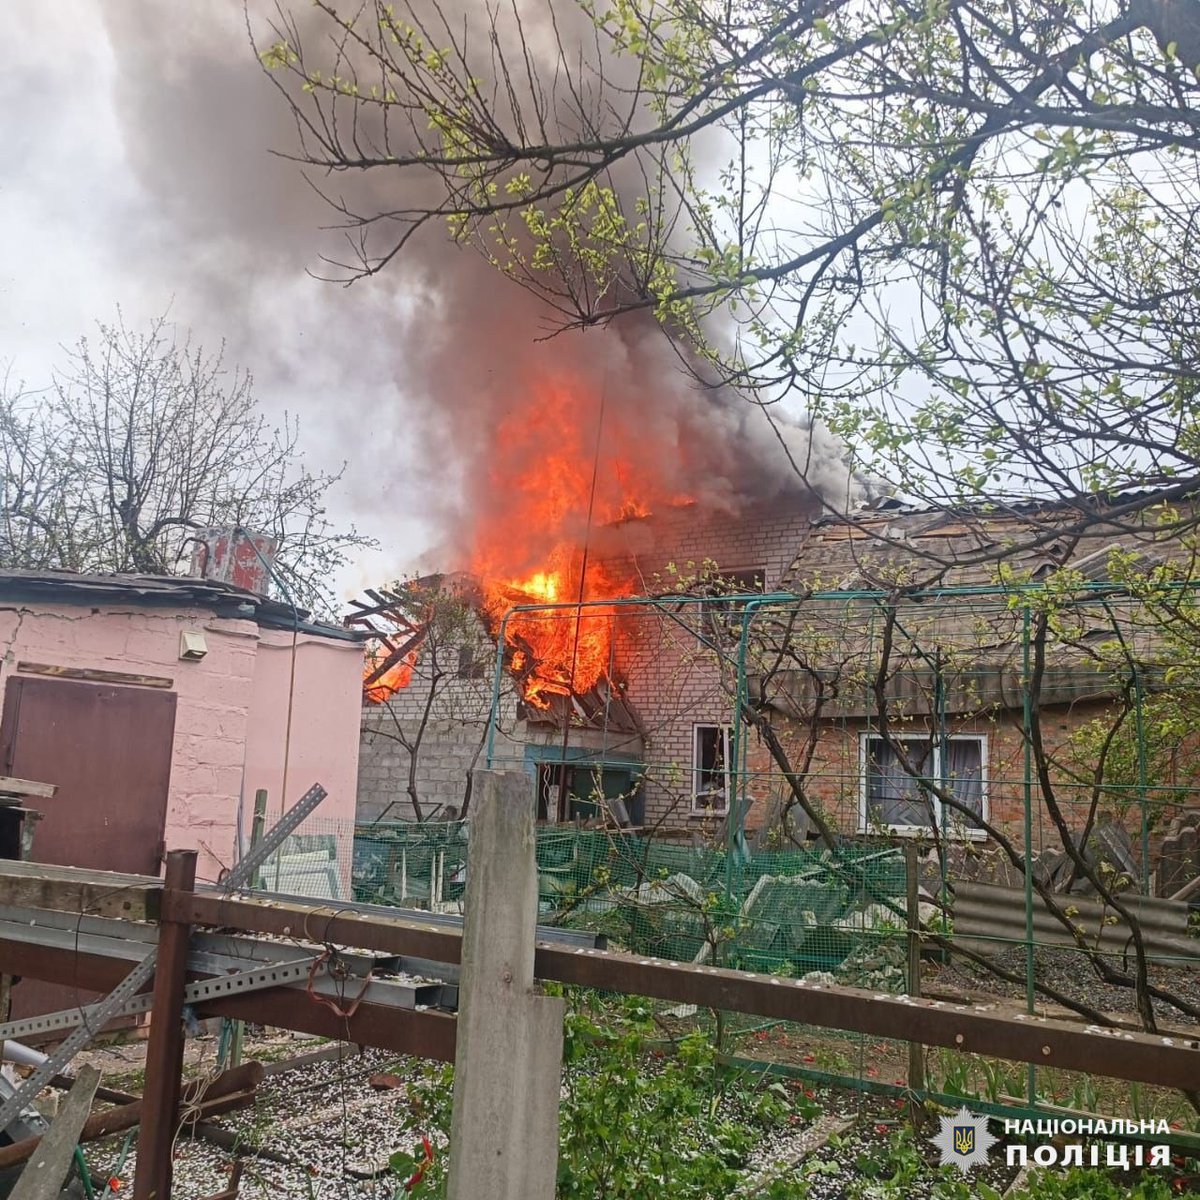 3 деца и още един човек са ранени в резултат на руски въздушен удар в Дерхачи в Харковска област